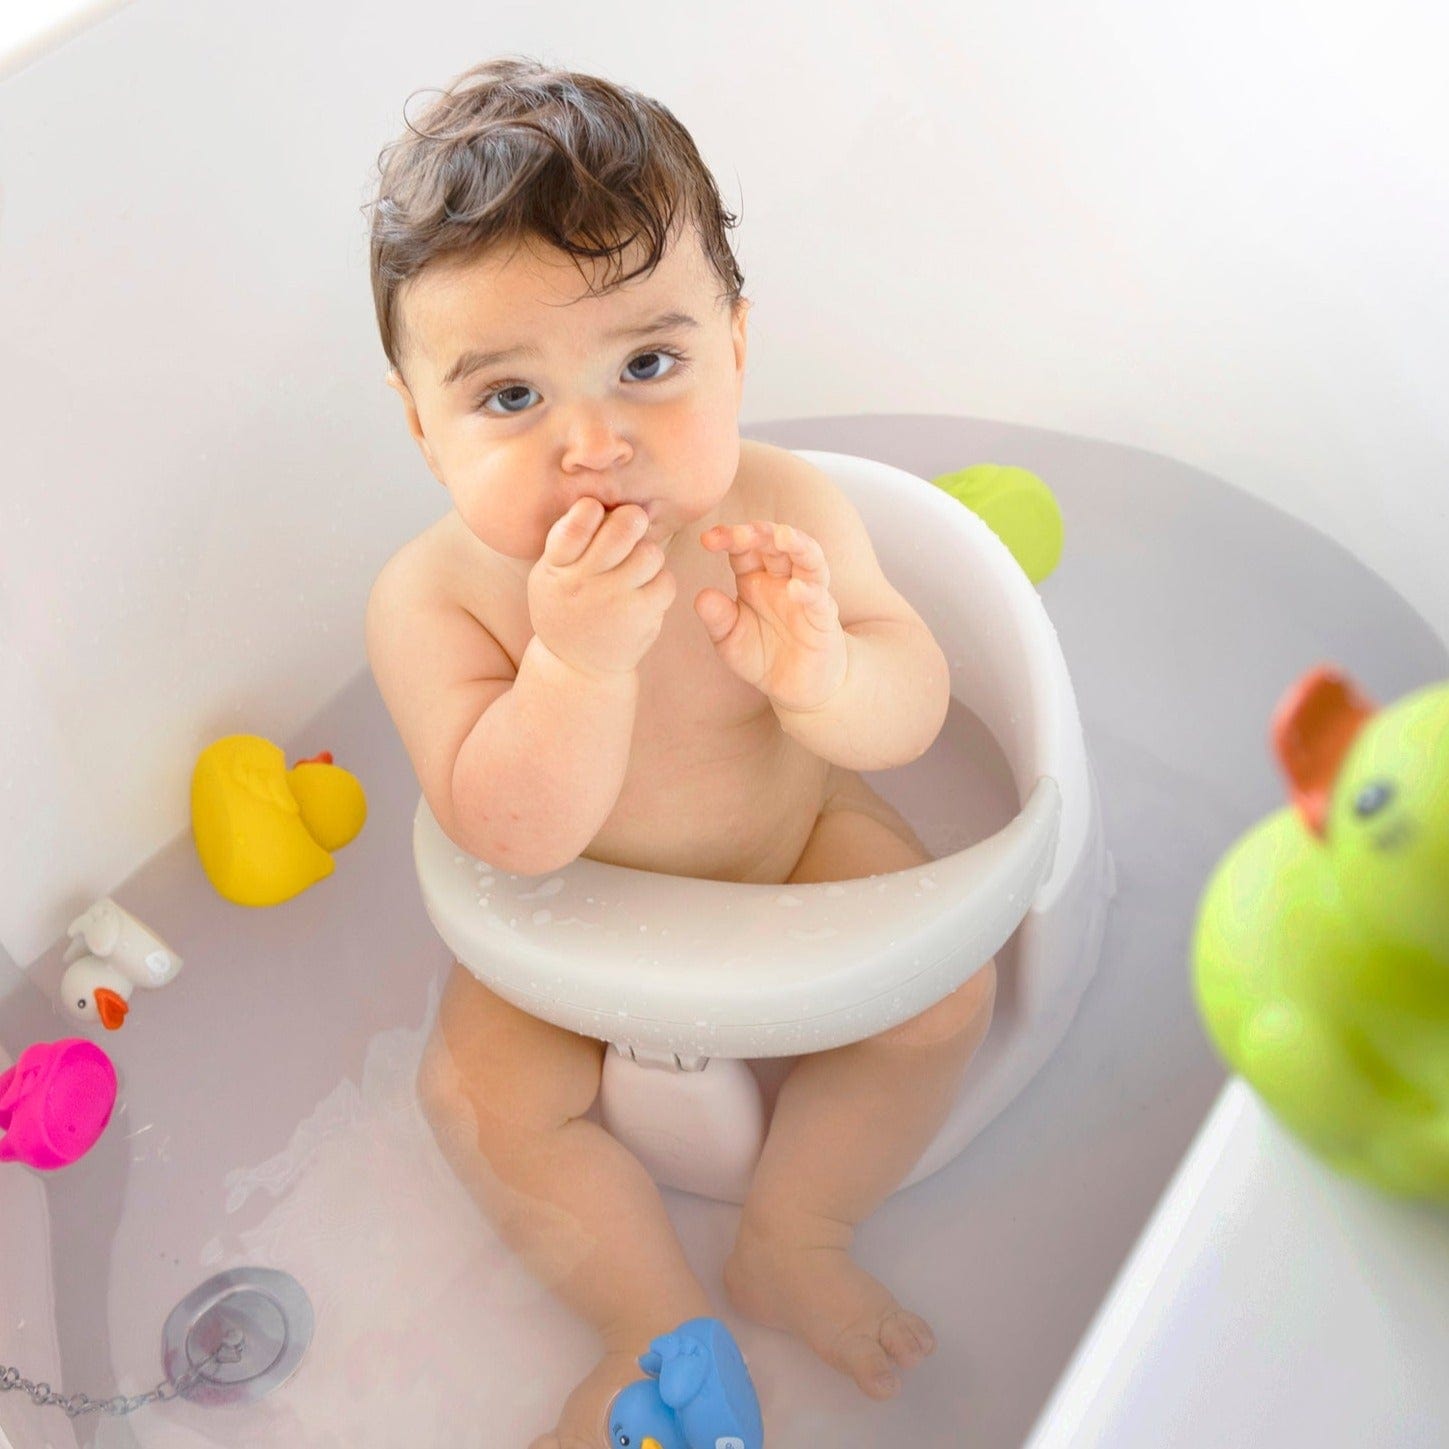 juego de lavado de bañera para bebé con silla de baño/bañera de plástico para  bebé con asiento